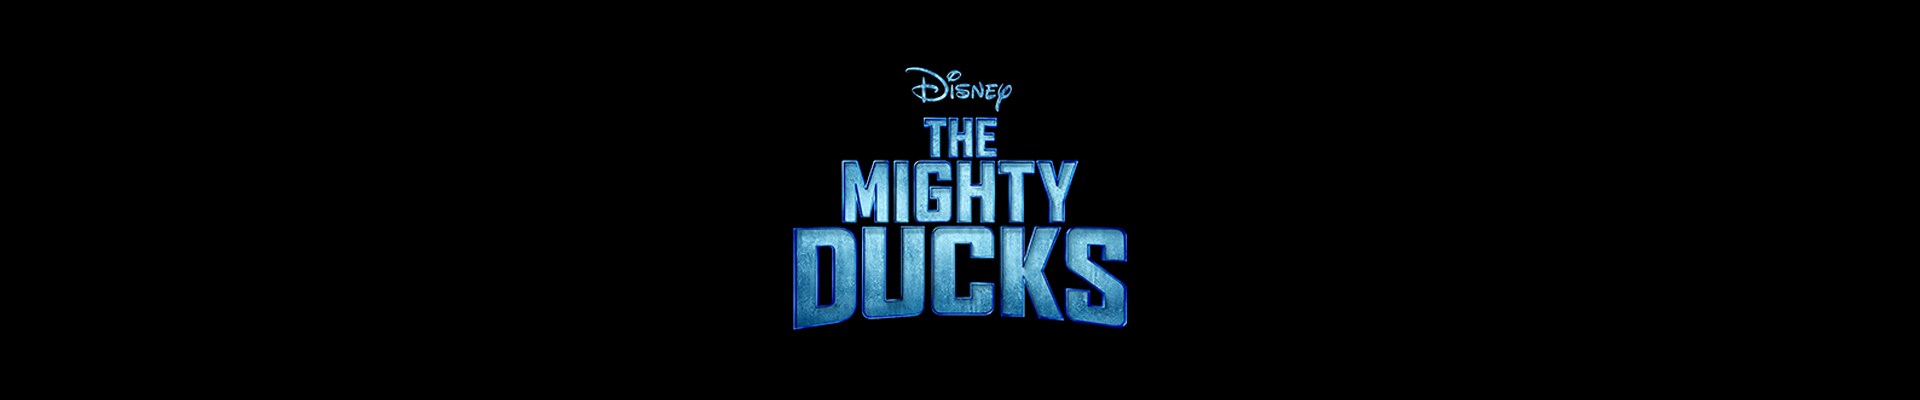 The Mighty Ducks I Estreno 26 de marzo | Solo en Disney+